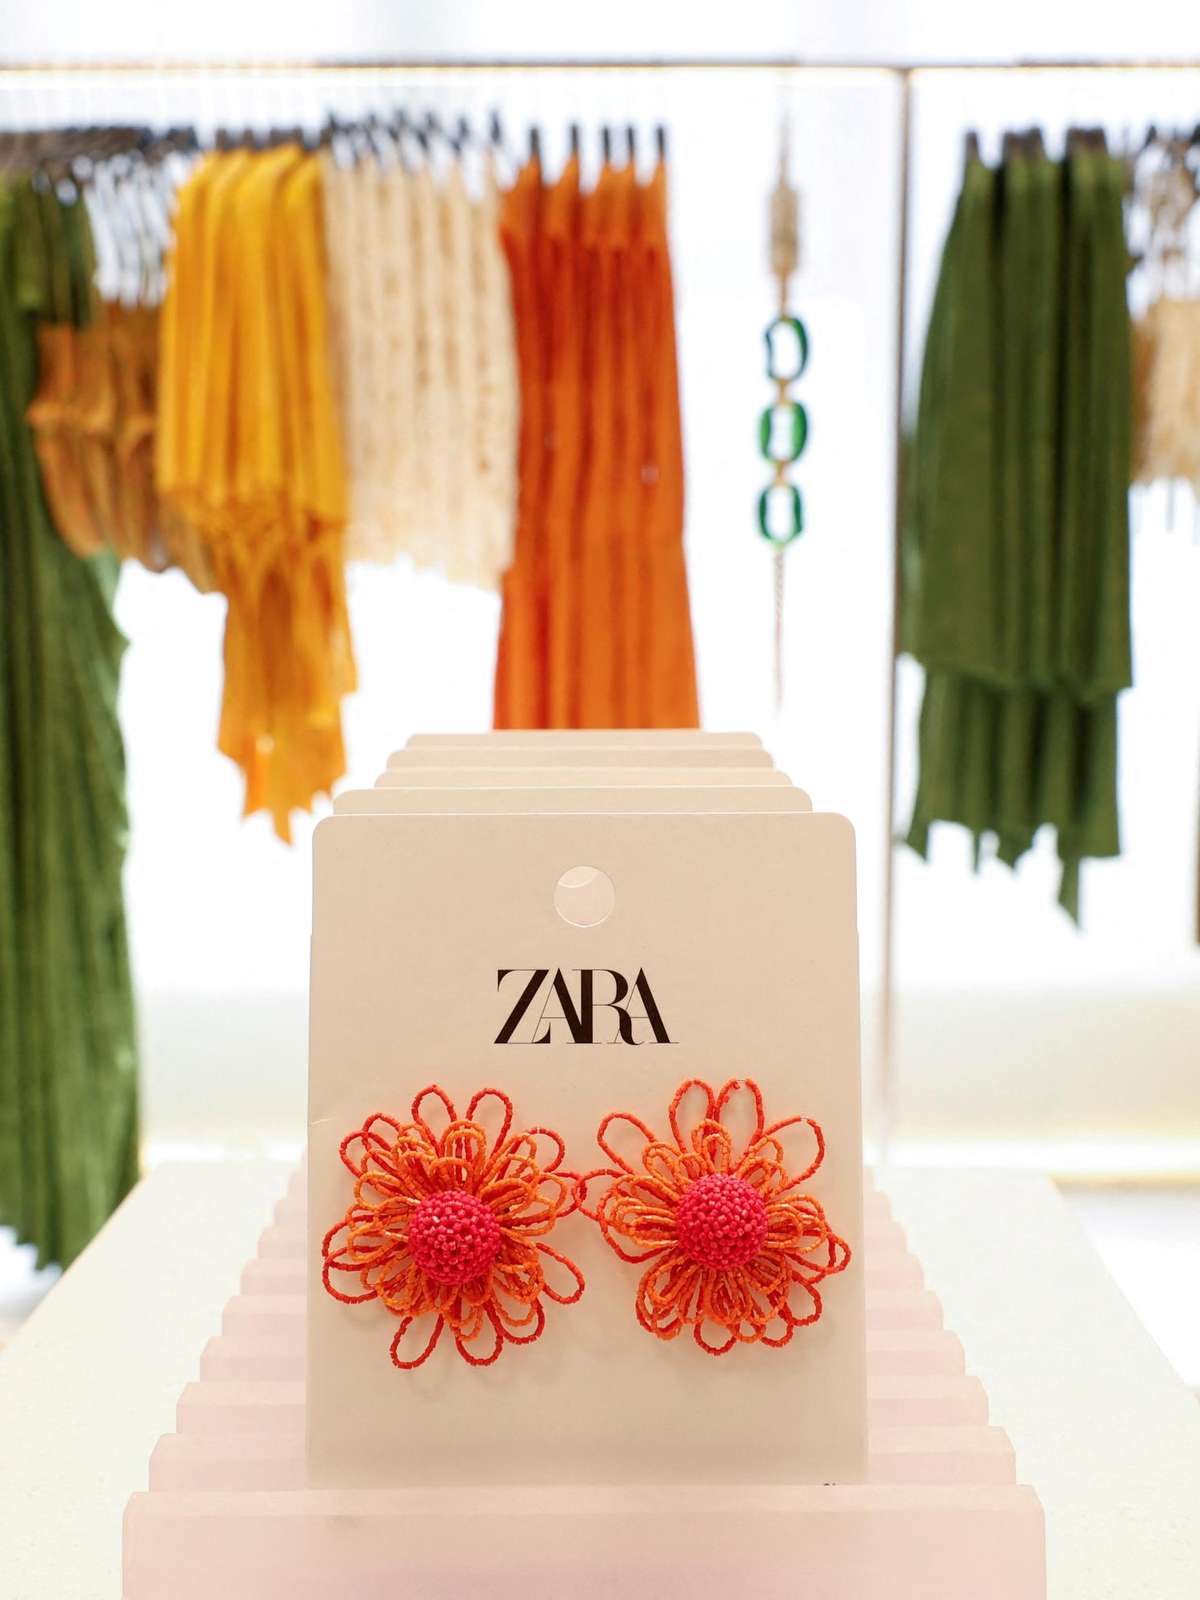 Indíce Zara: roupas estão mais caras no Brasil - JORNAL DA TARDE